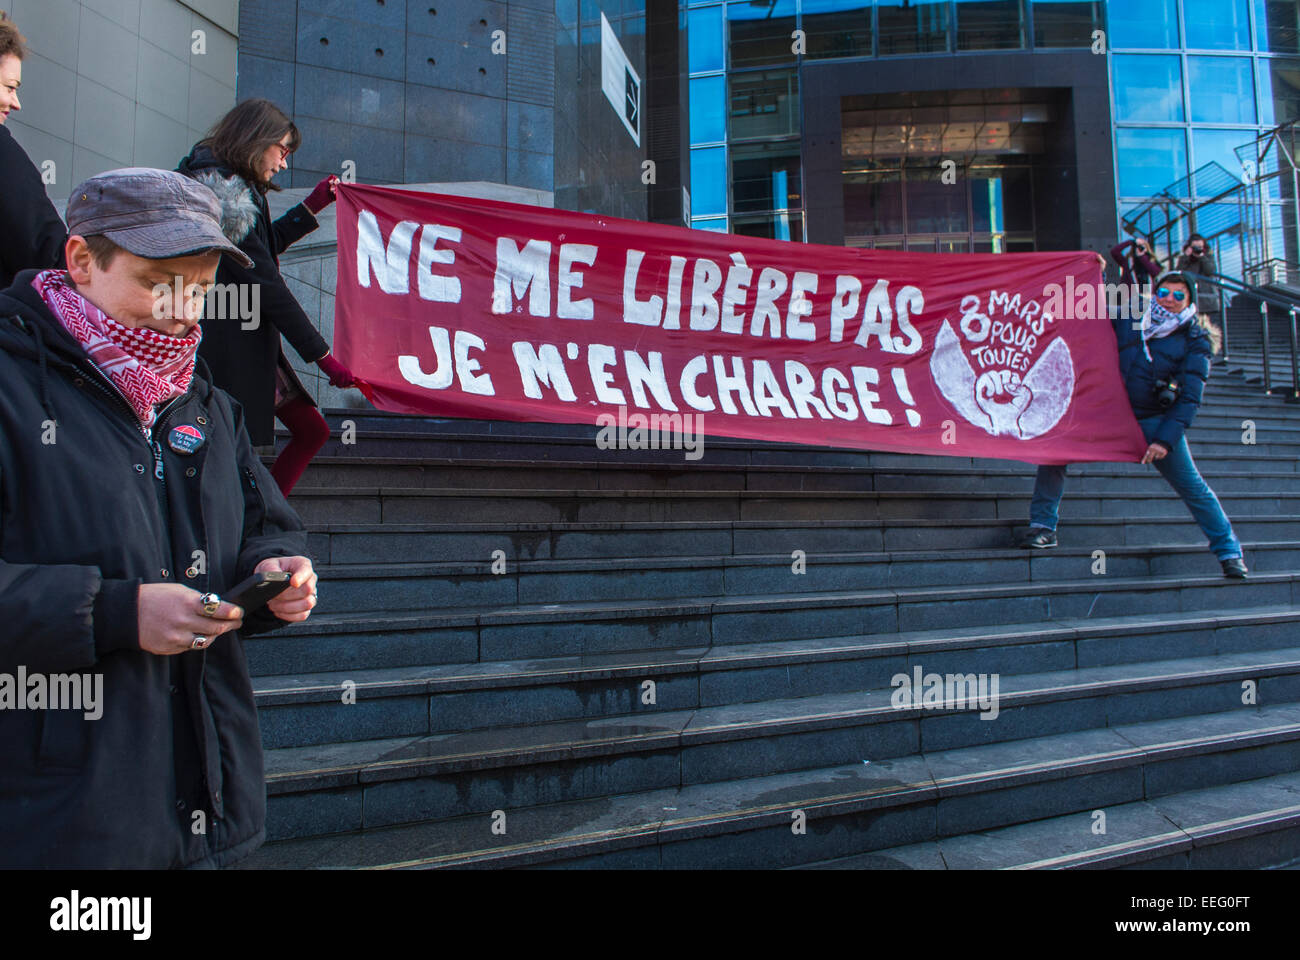 Paris, France, les groupes français de N.G.O., manifestation féministe en l'honneur de 40th anniversaire de la légalisation de la loi sur l'avortement, '8 mars' bannière se lit comme suit: 'Ne pas me libérer, je vais faire moi-même' la protestation des droits de la femme, le rassemblement pro Choice, la protestation pro avortement Banque D'Images